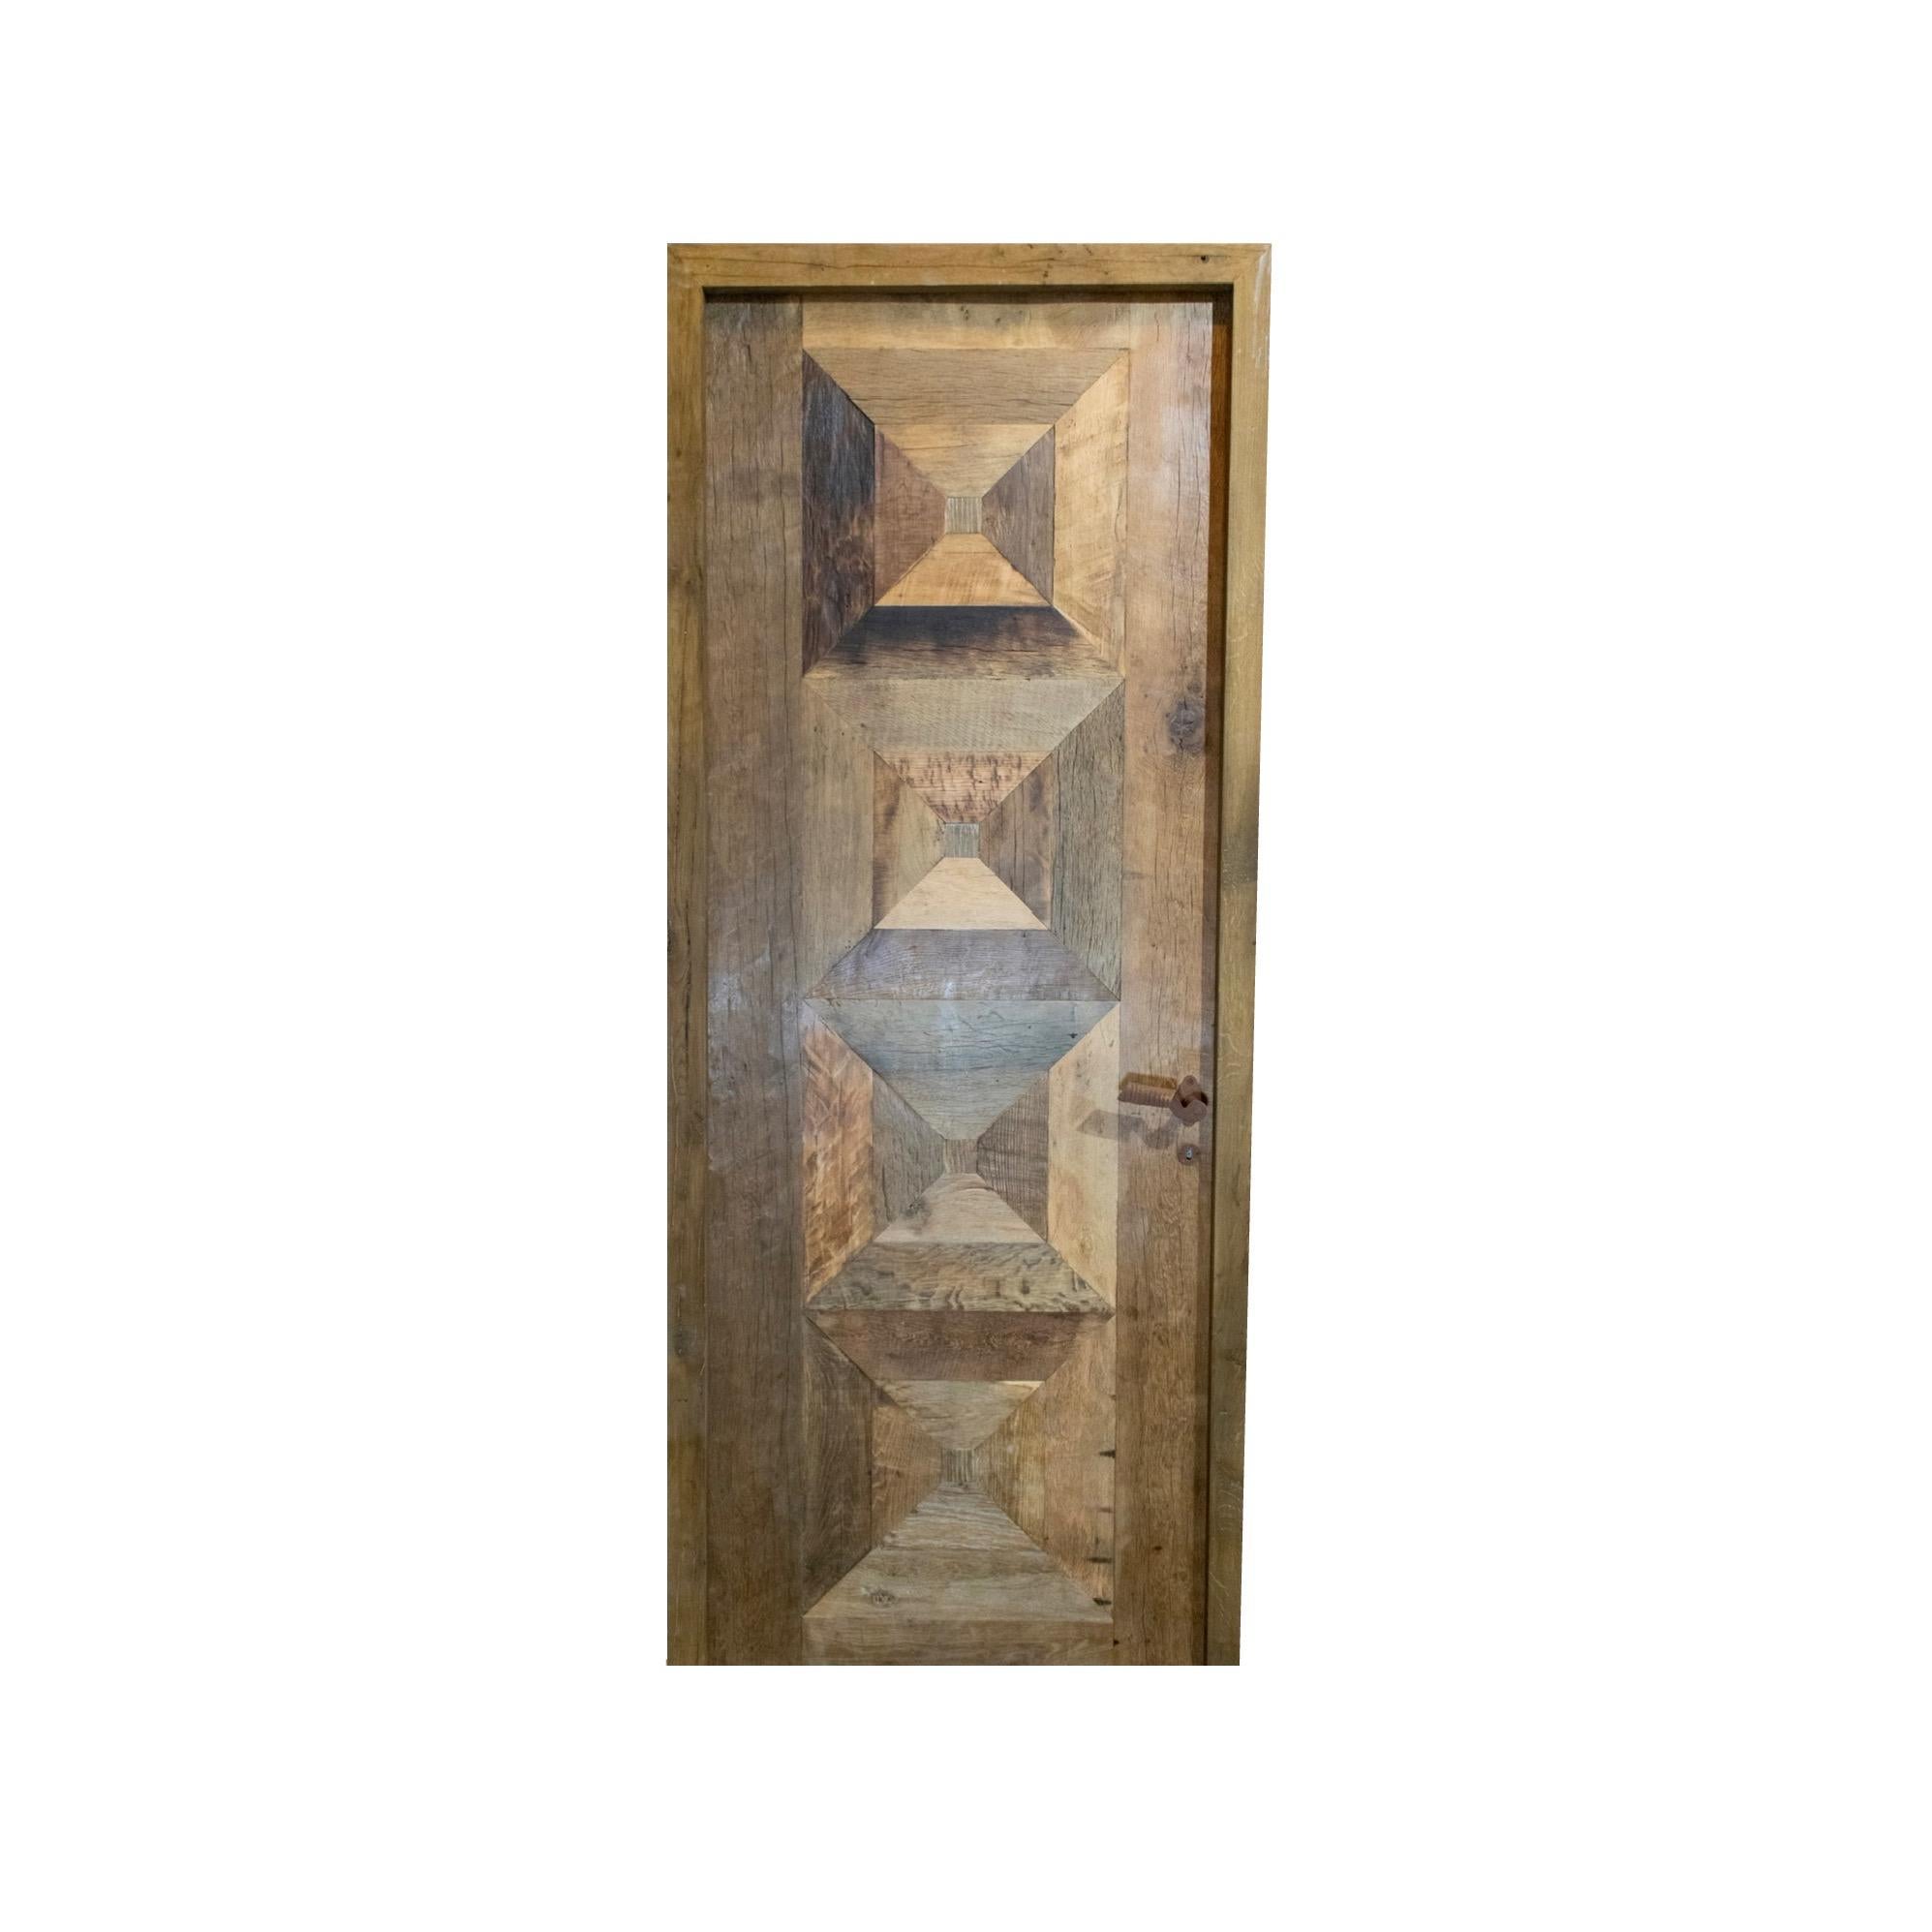 Une porte de récupération fabriquée à partir de bois de chêne nouvellement construit. La porte est prête à être verrouillée et est livrée avec une clé. Circa, 18ème siècle. 

Les portes rustiques récupérées sont des portes fabriquées à partir de